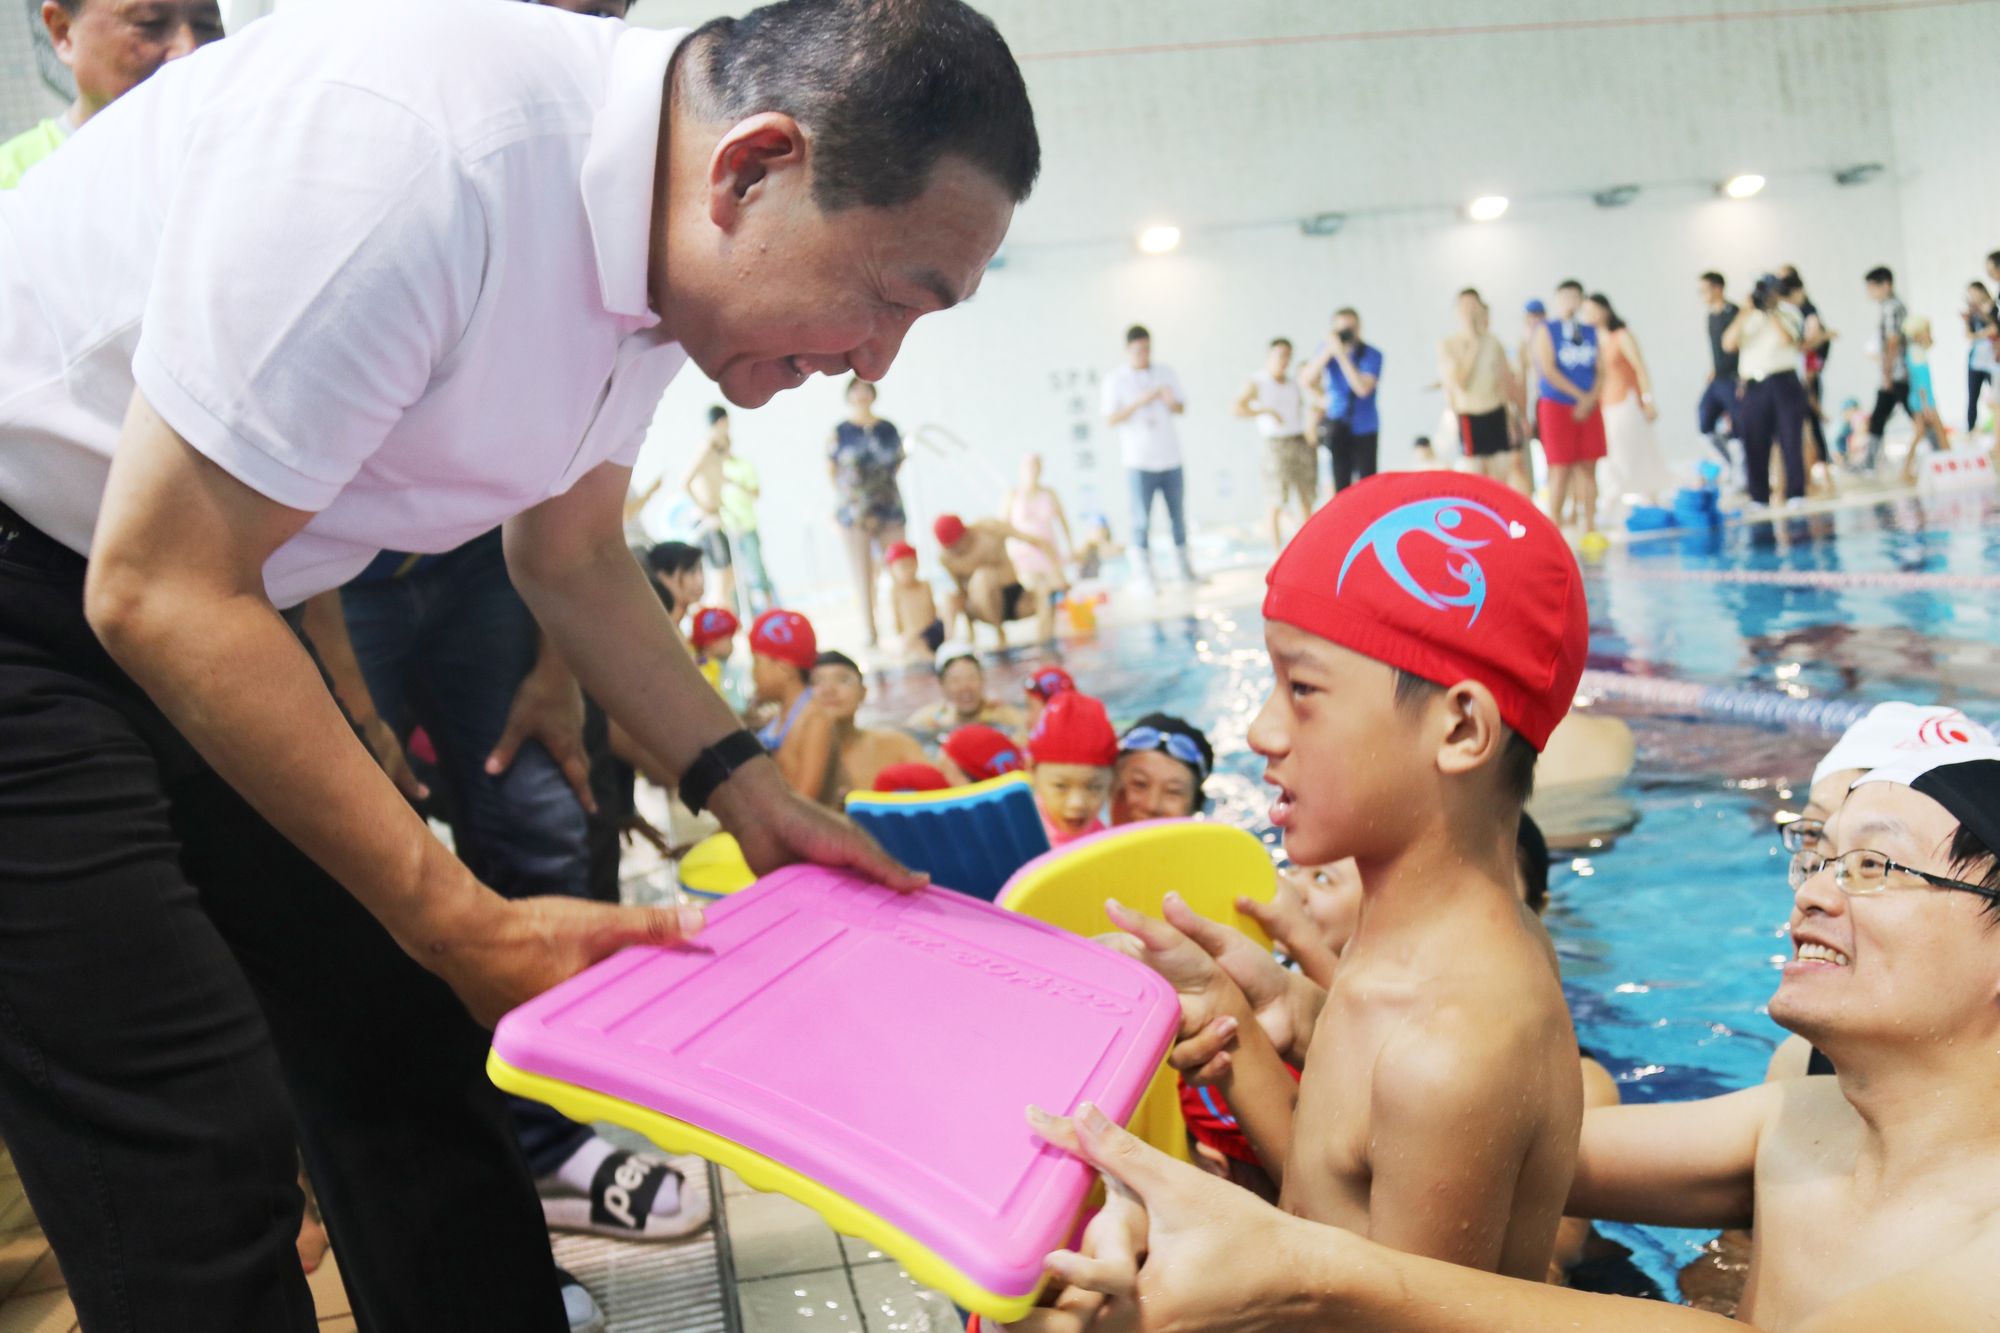 1080907樹林參與式預算辦身心障礙孩童泳課 侯友宜期勉暢游生活泳抱健康